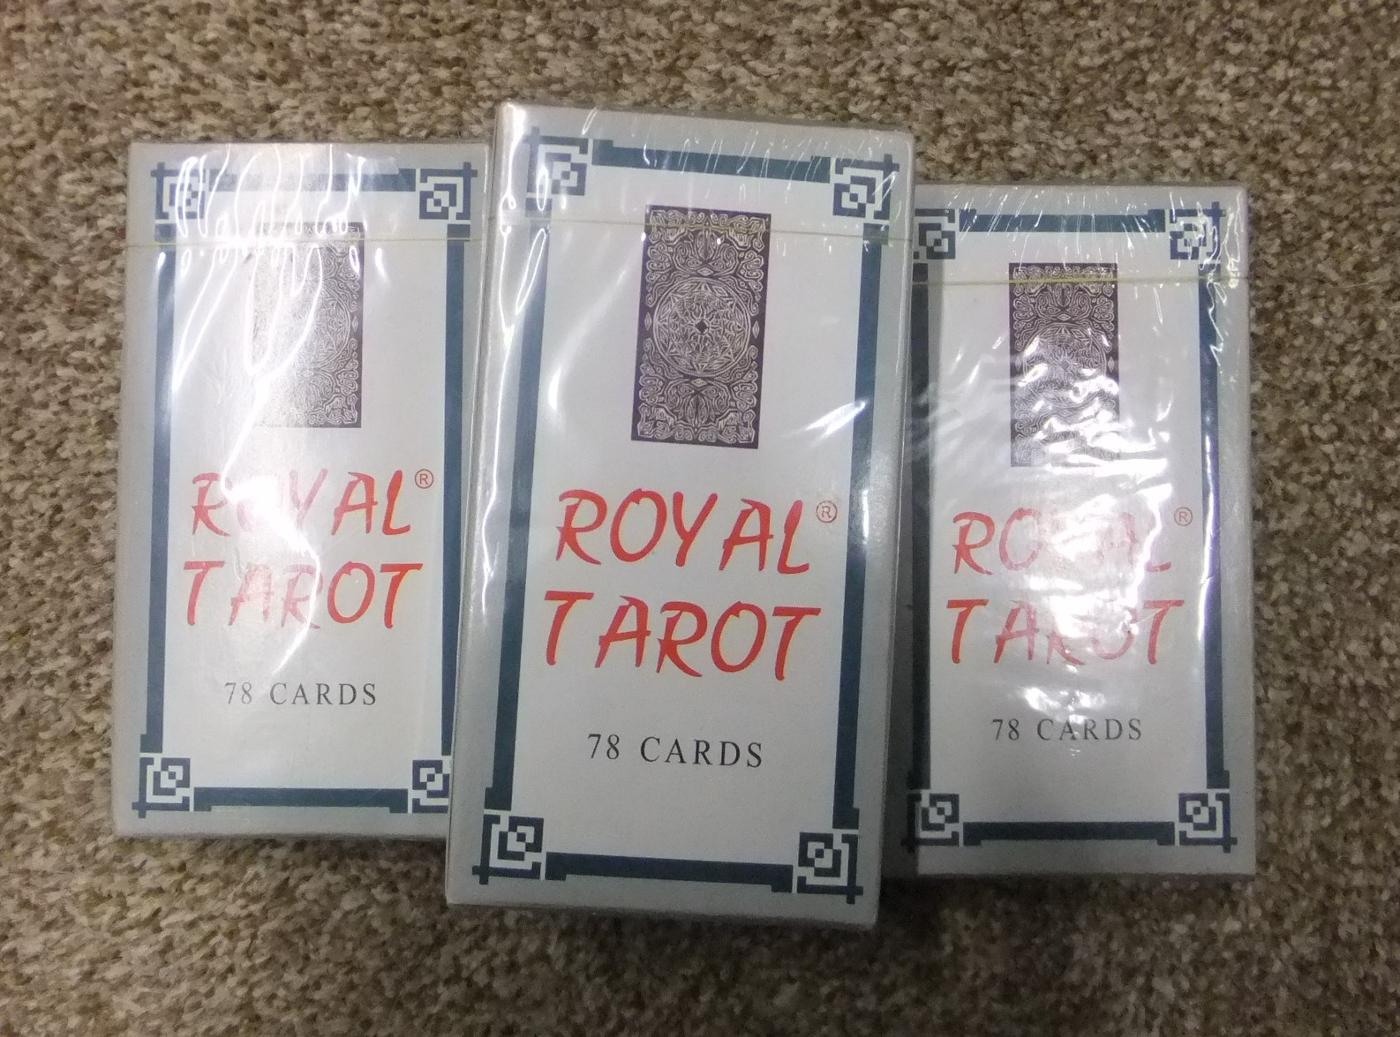 Royal Tarot Cards